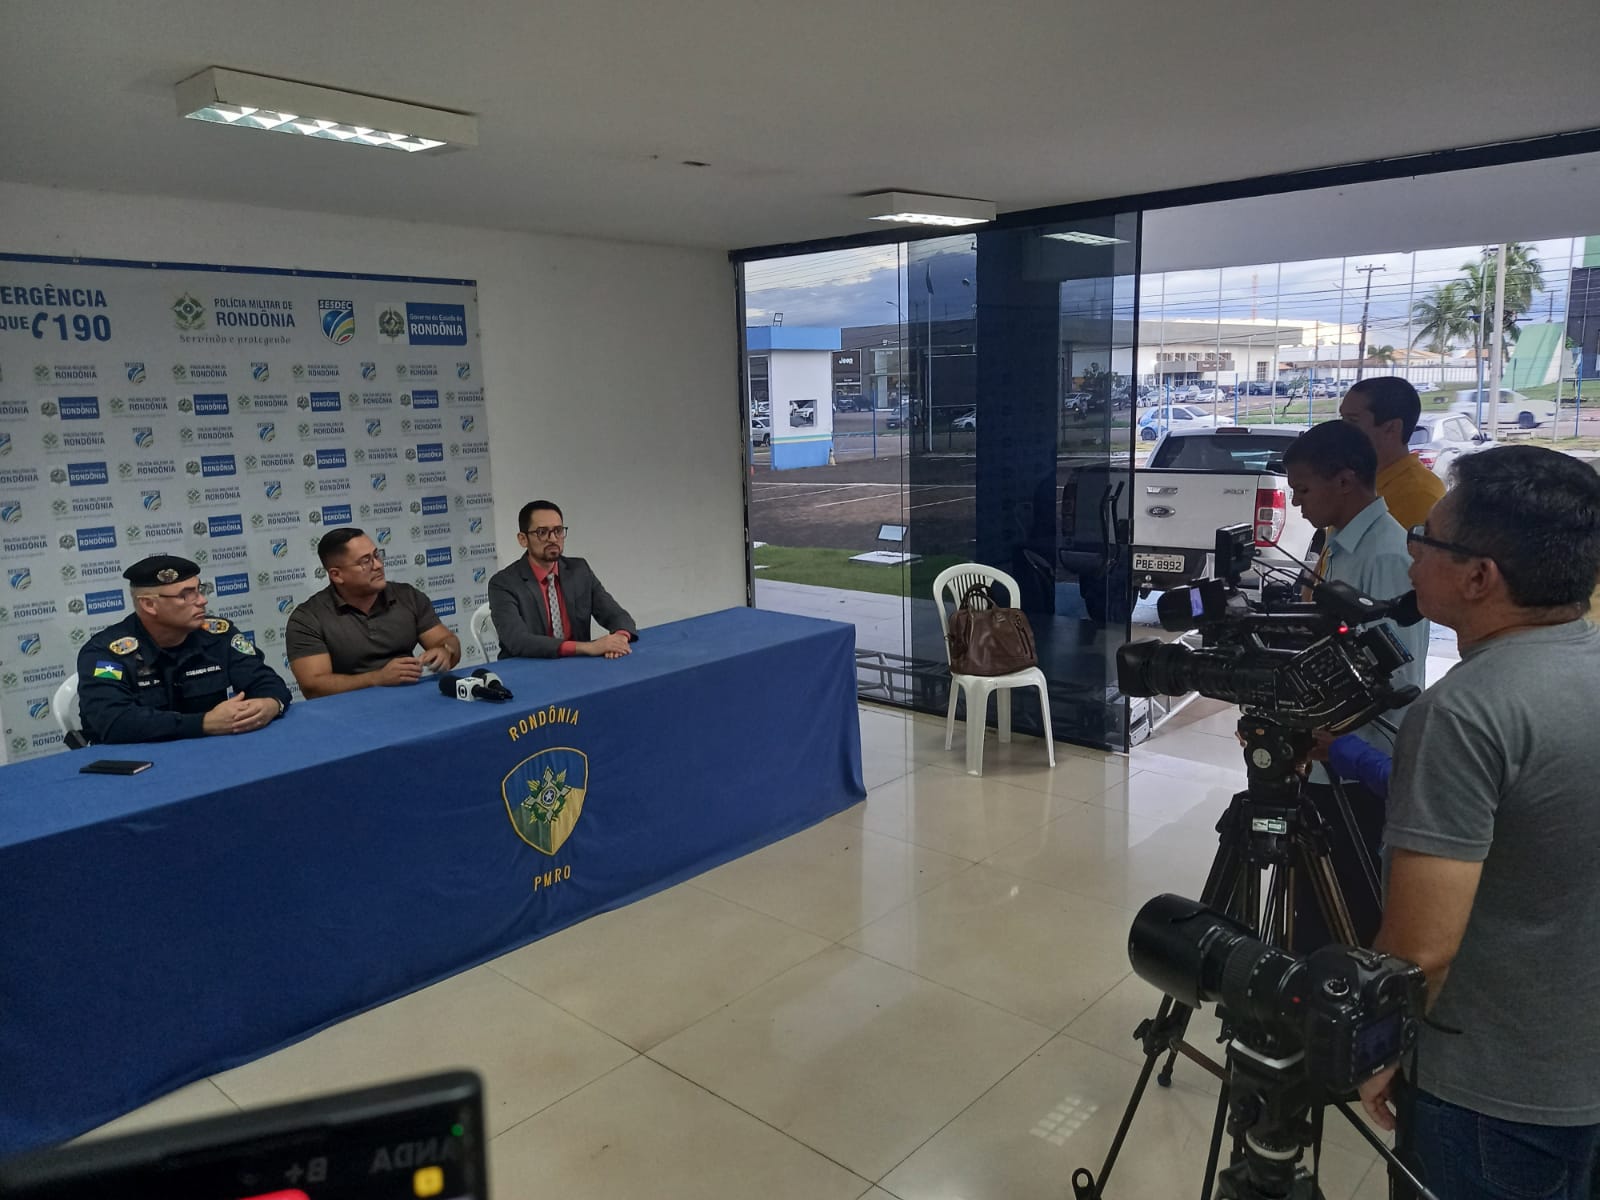 Segurança escolar - Governo de Rondônia anuncia mais reforço do policiamento nas Escolas em Rondônia - News Rondônia